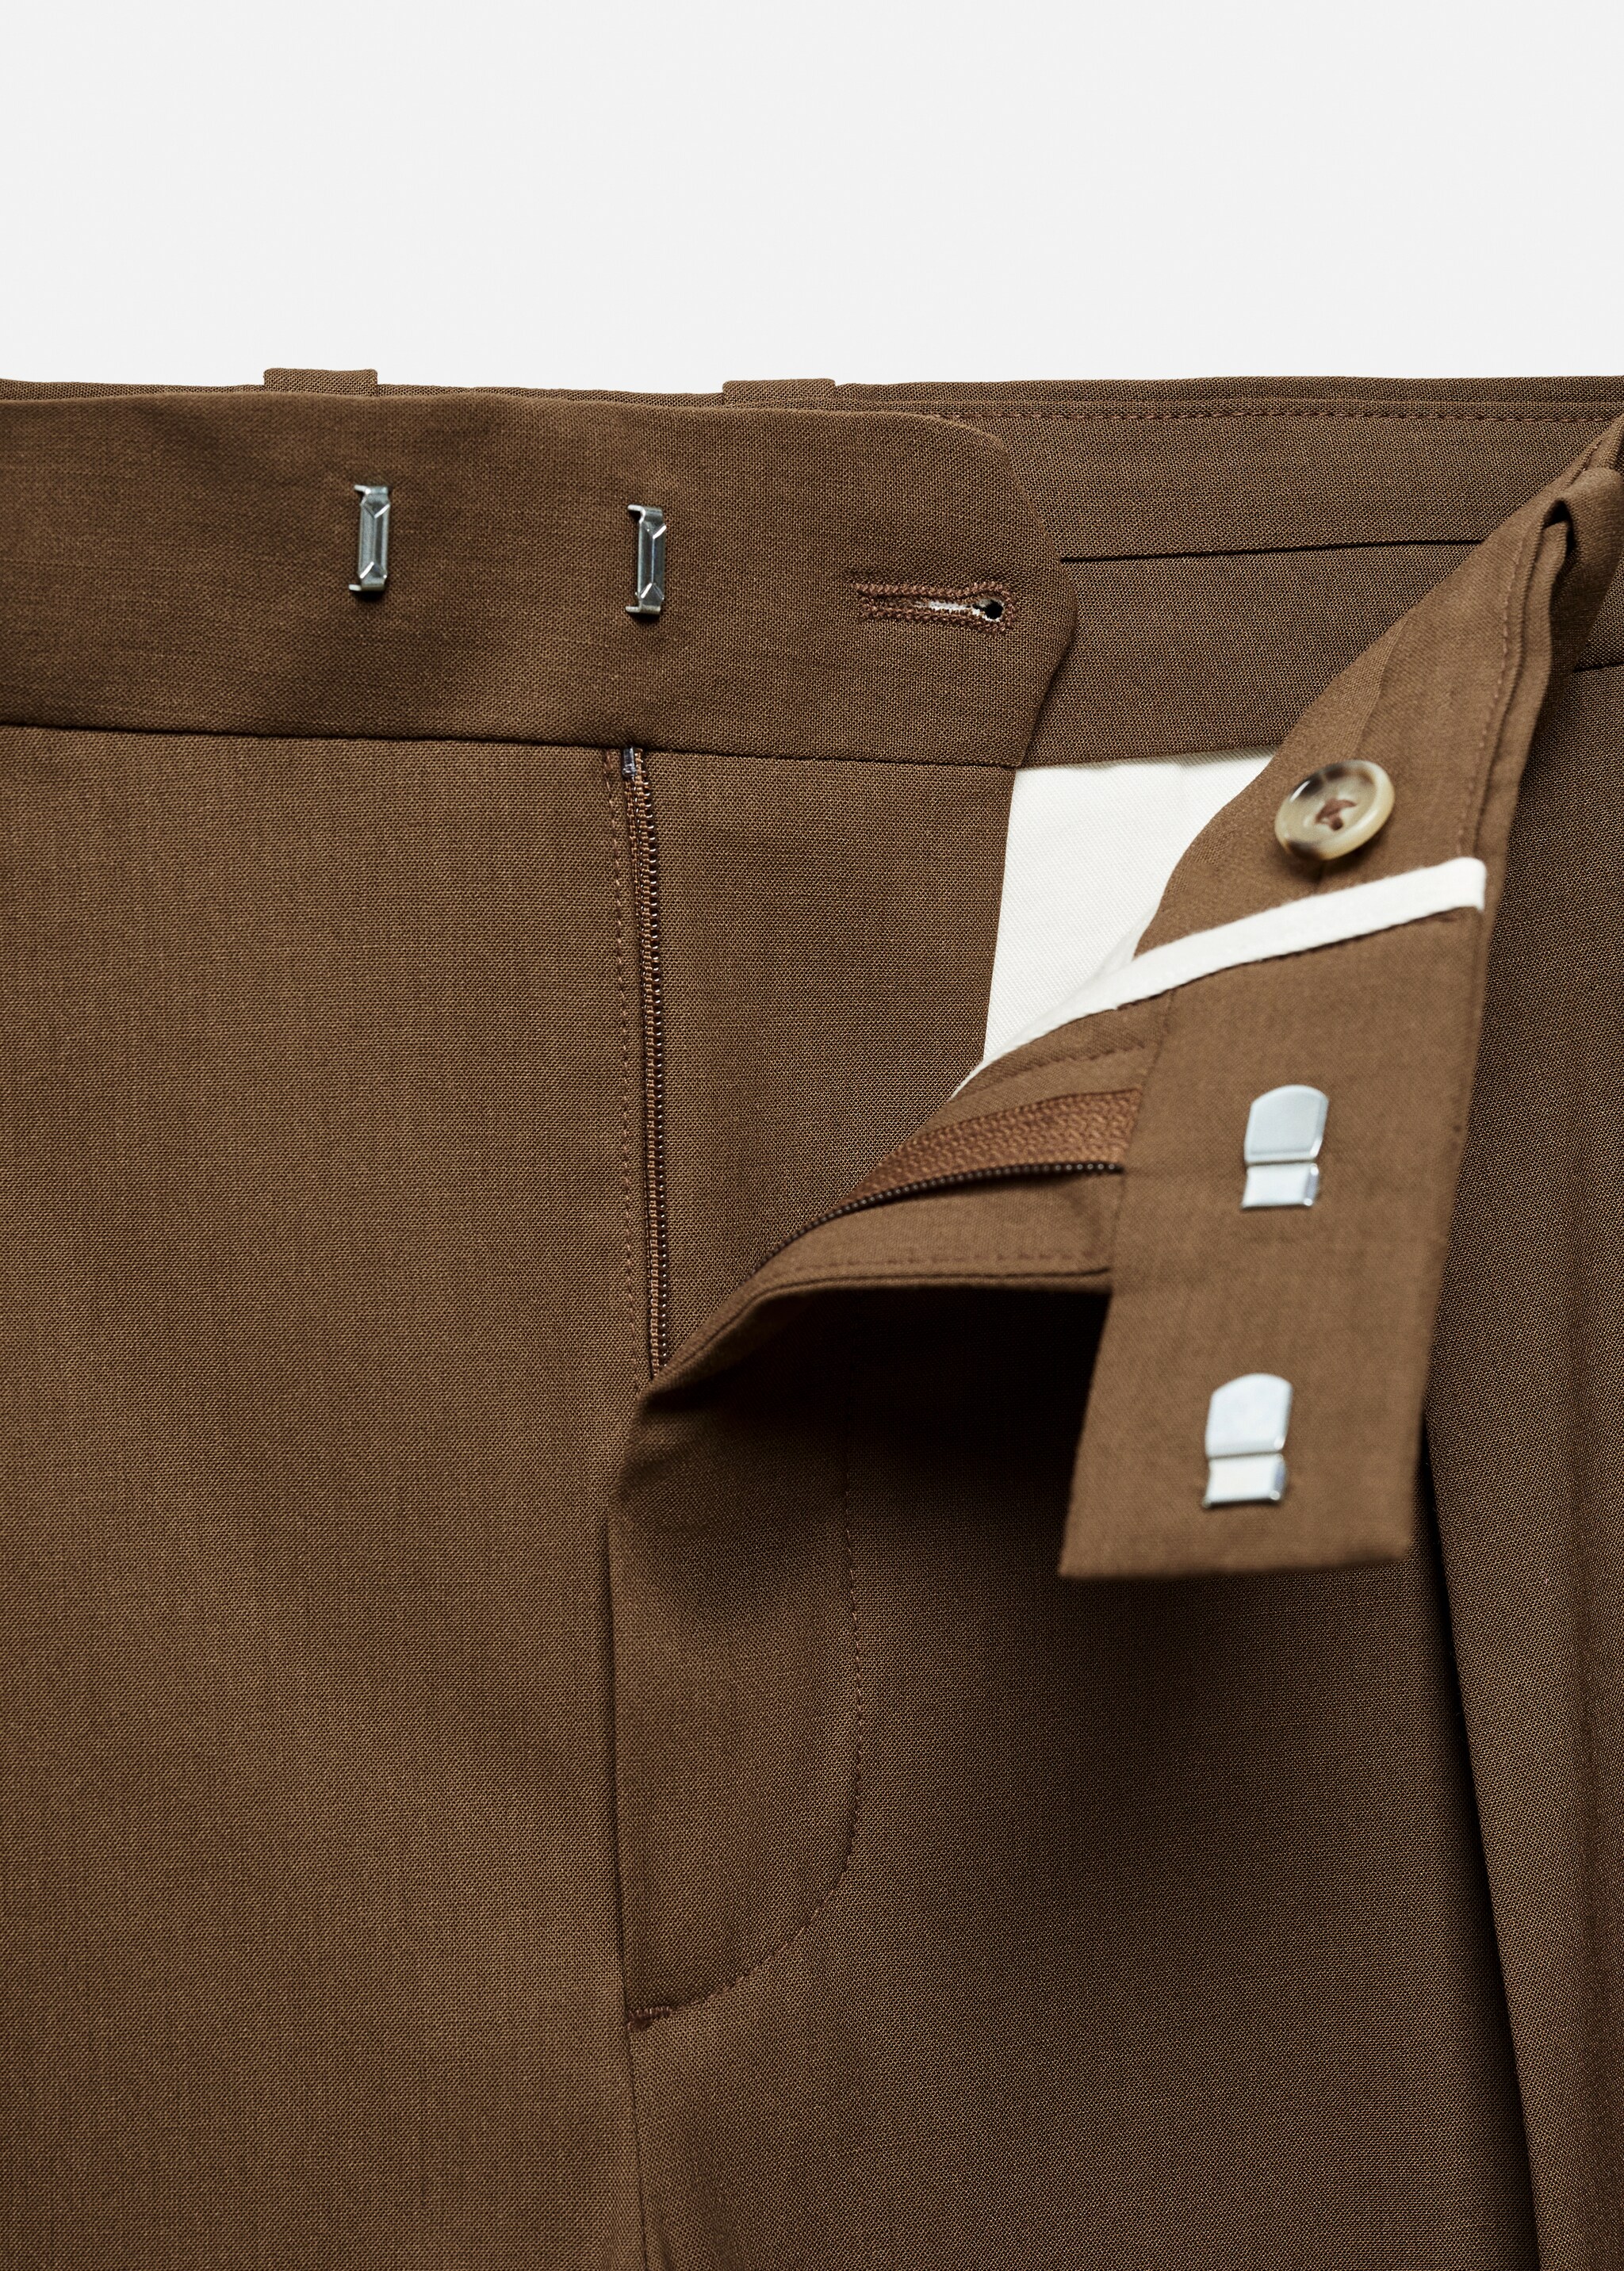 Παντελόνι κοστουμιού relaxed fit πιέτες - Λεπτομέρεια του προϊόντος 8